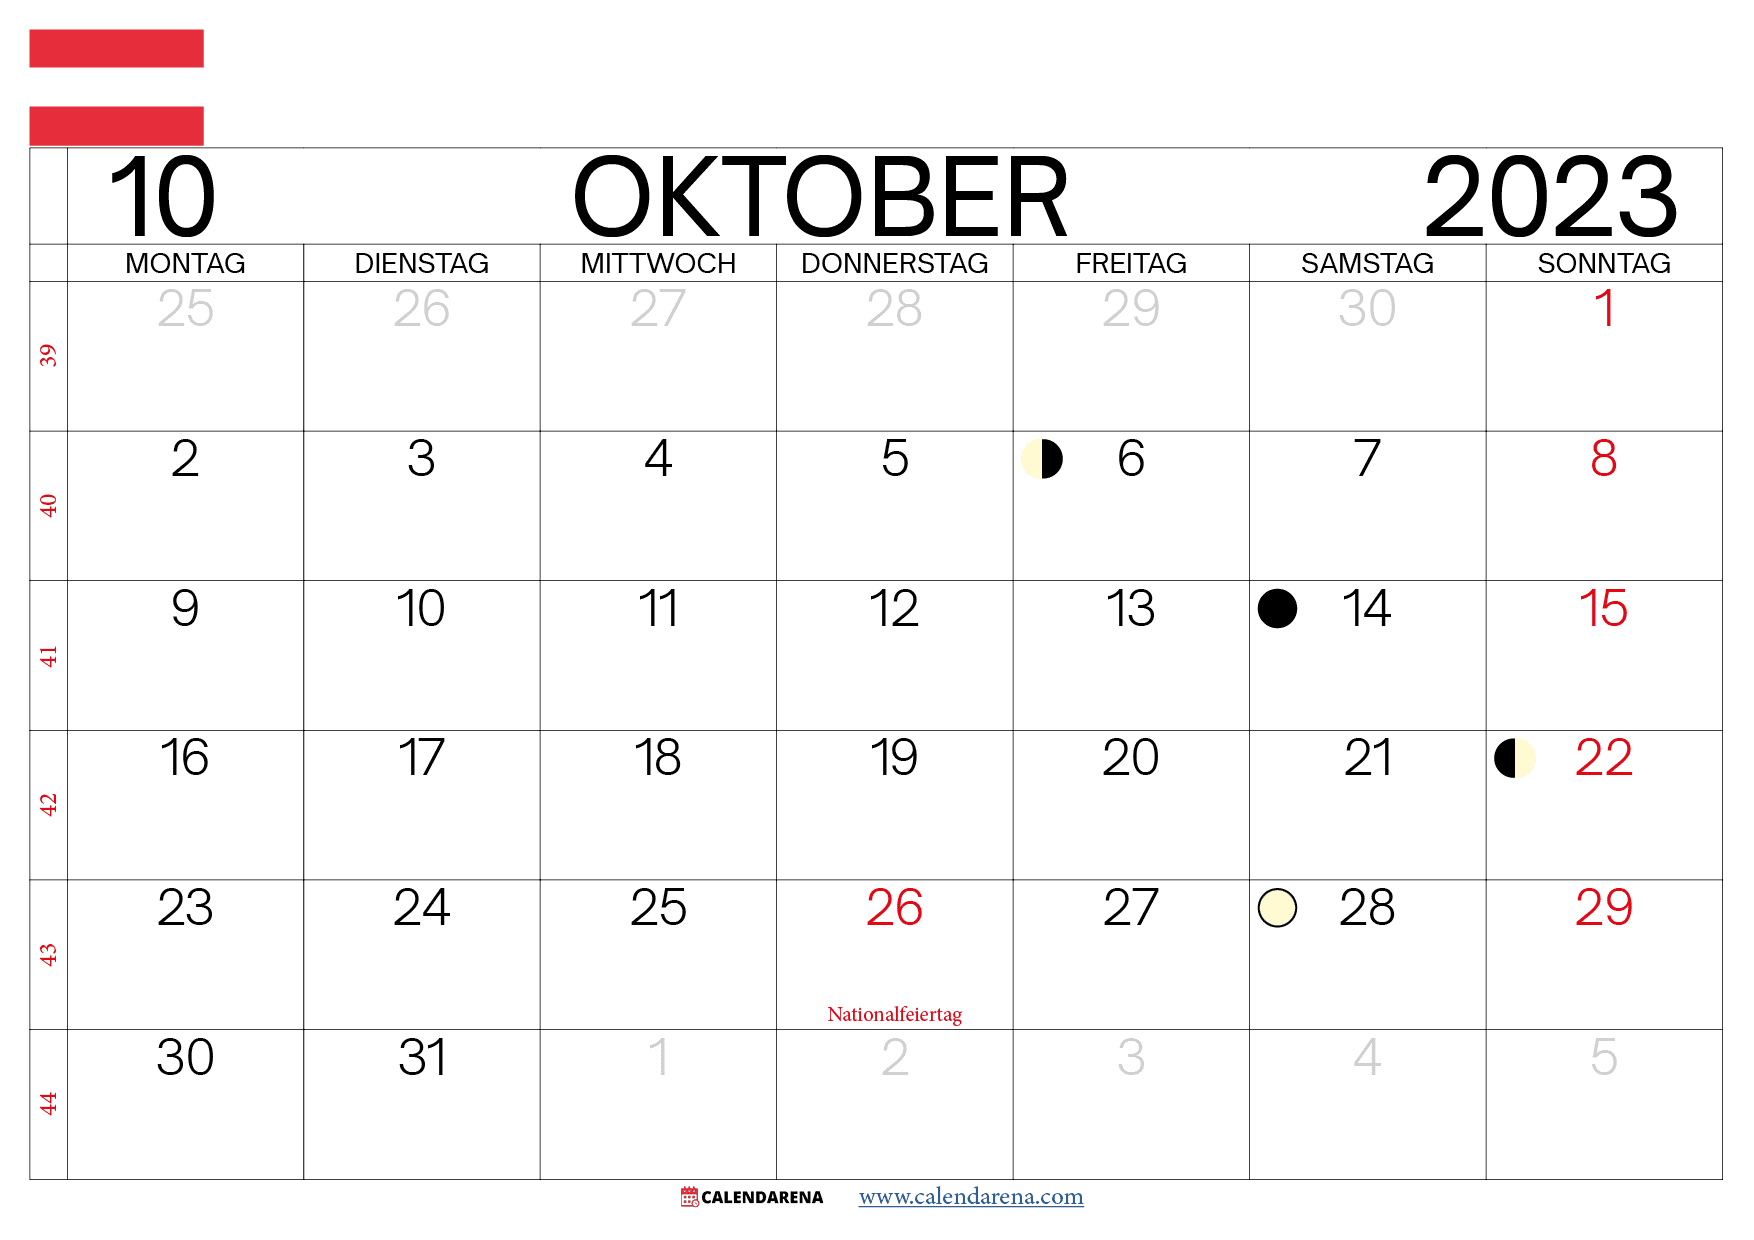 Oktober 2023 kalender österreich